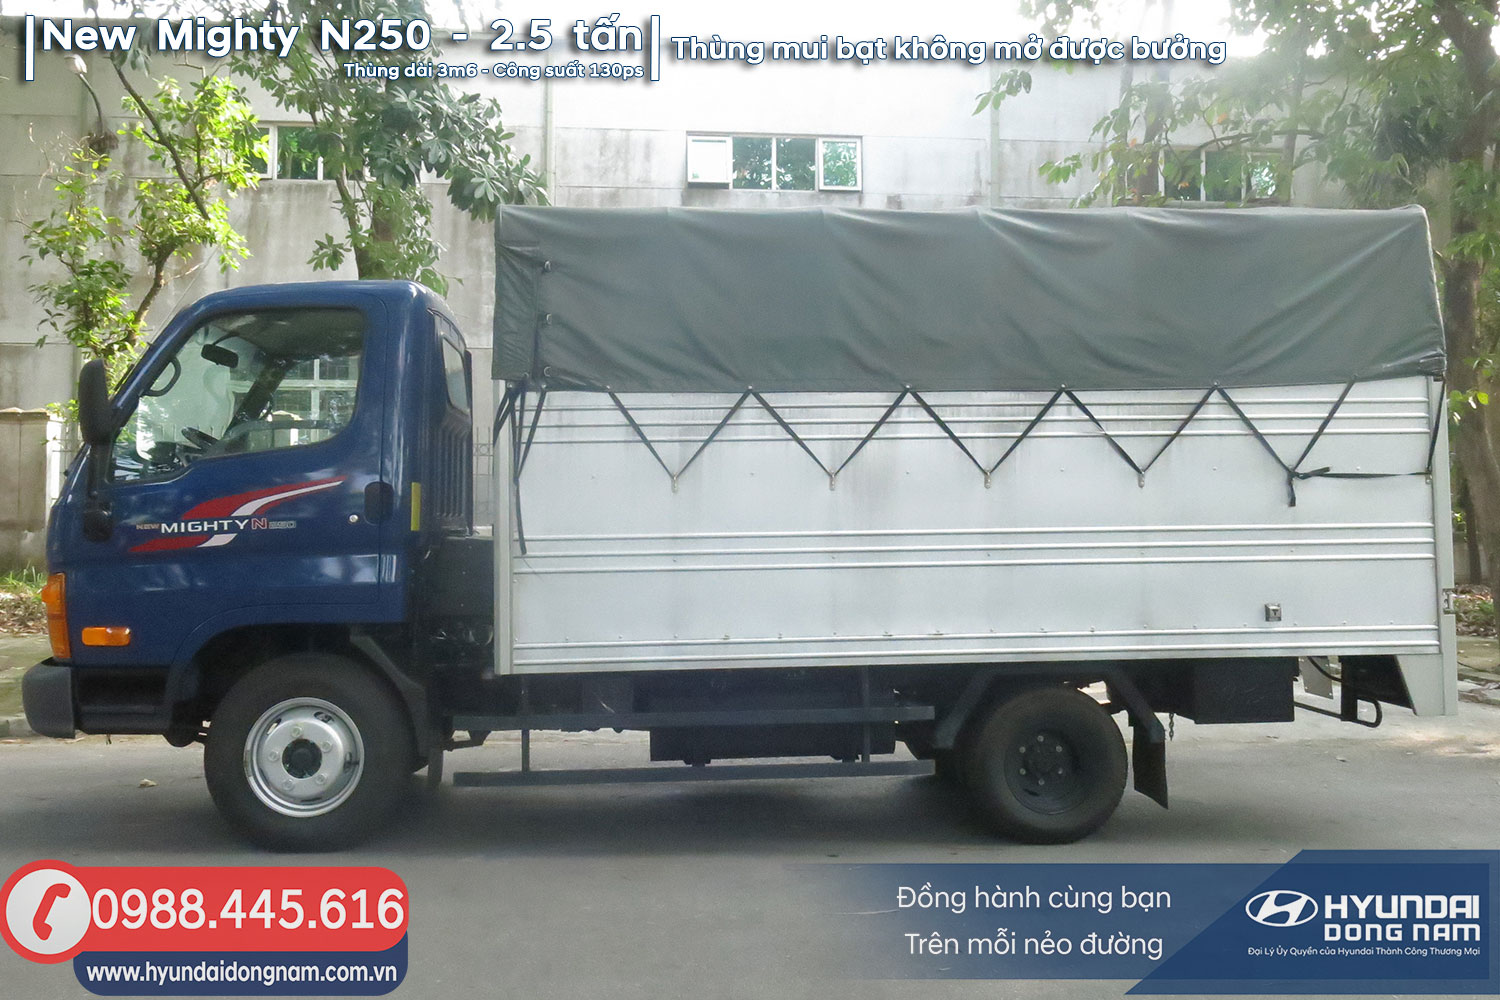 Hyundai N250 thung bạt khong mo duoc buong 1